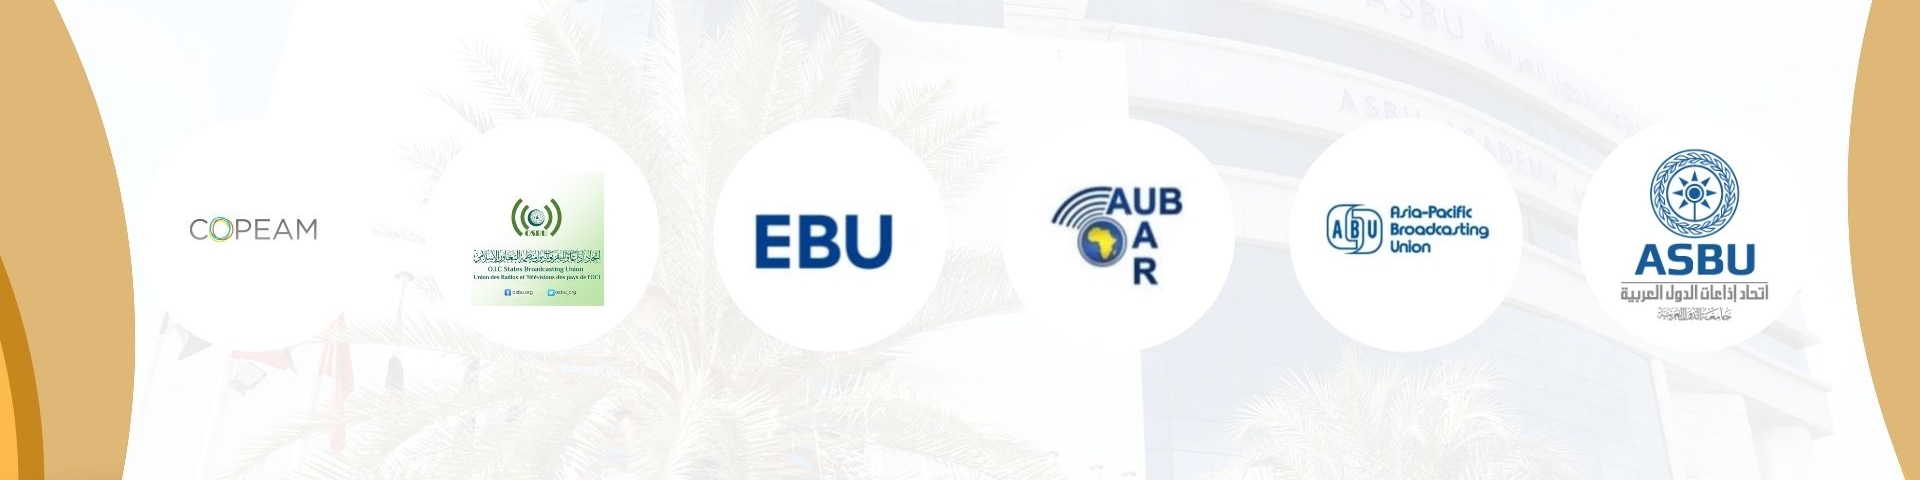 اتحاد اذاعات الدول العربية يستضيف  الاجتماع المشترك بين الاتحادات الإذاعية  ASBU/ABU /AUB/EBU/OSBU/COPEAM